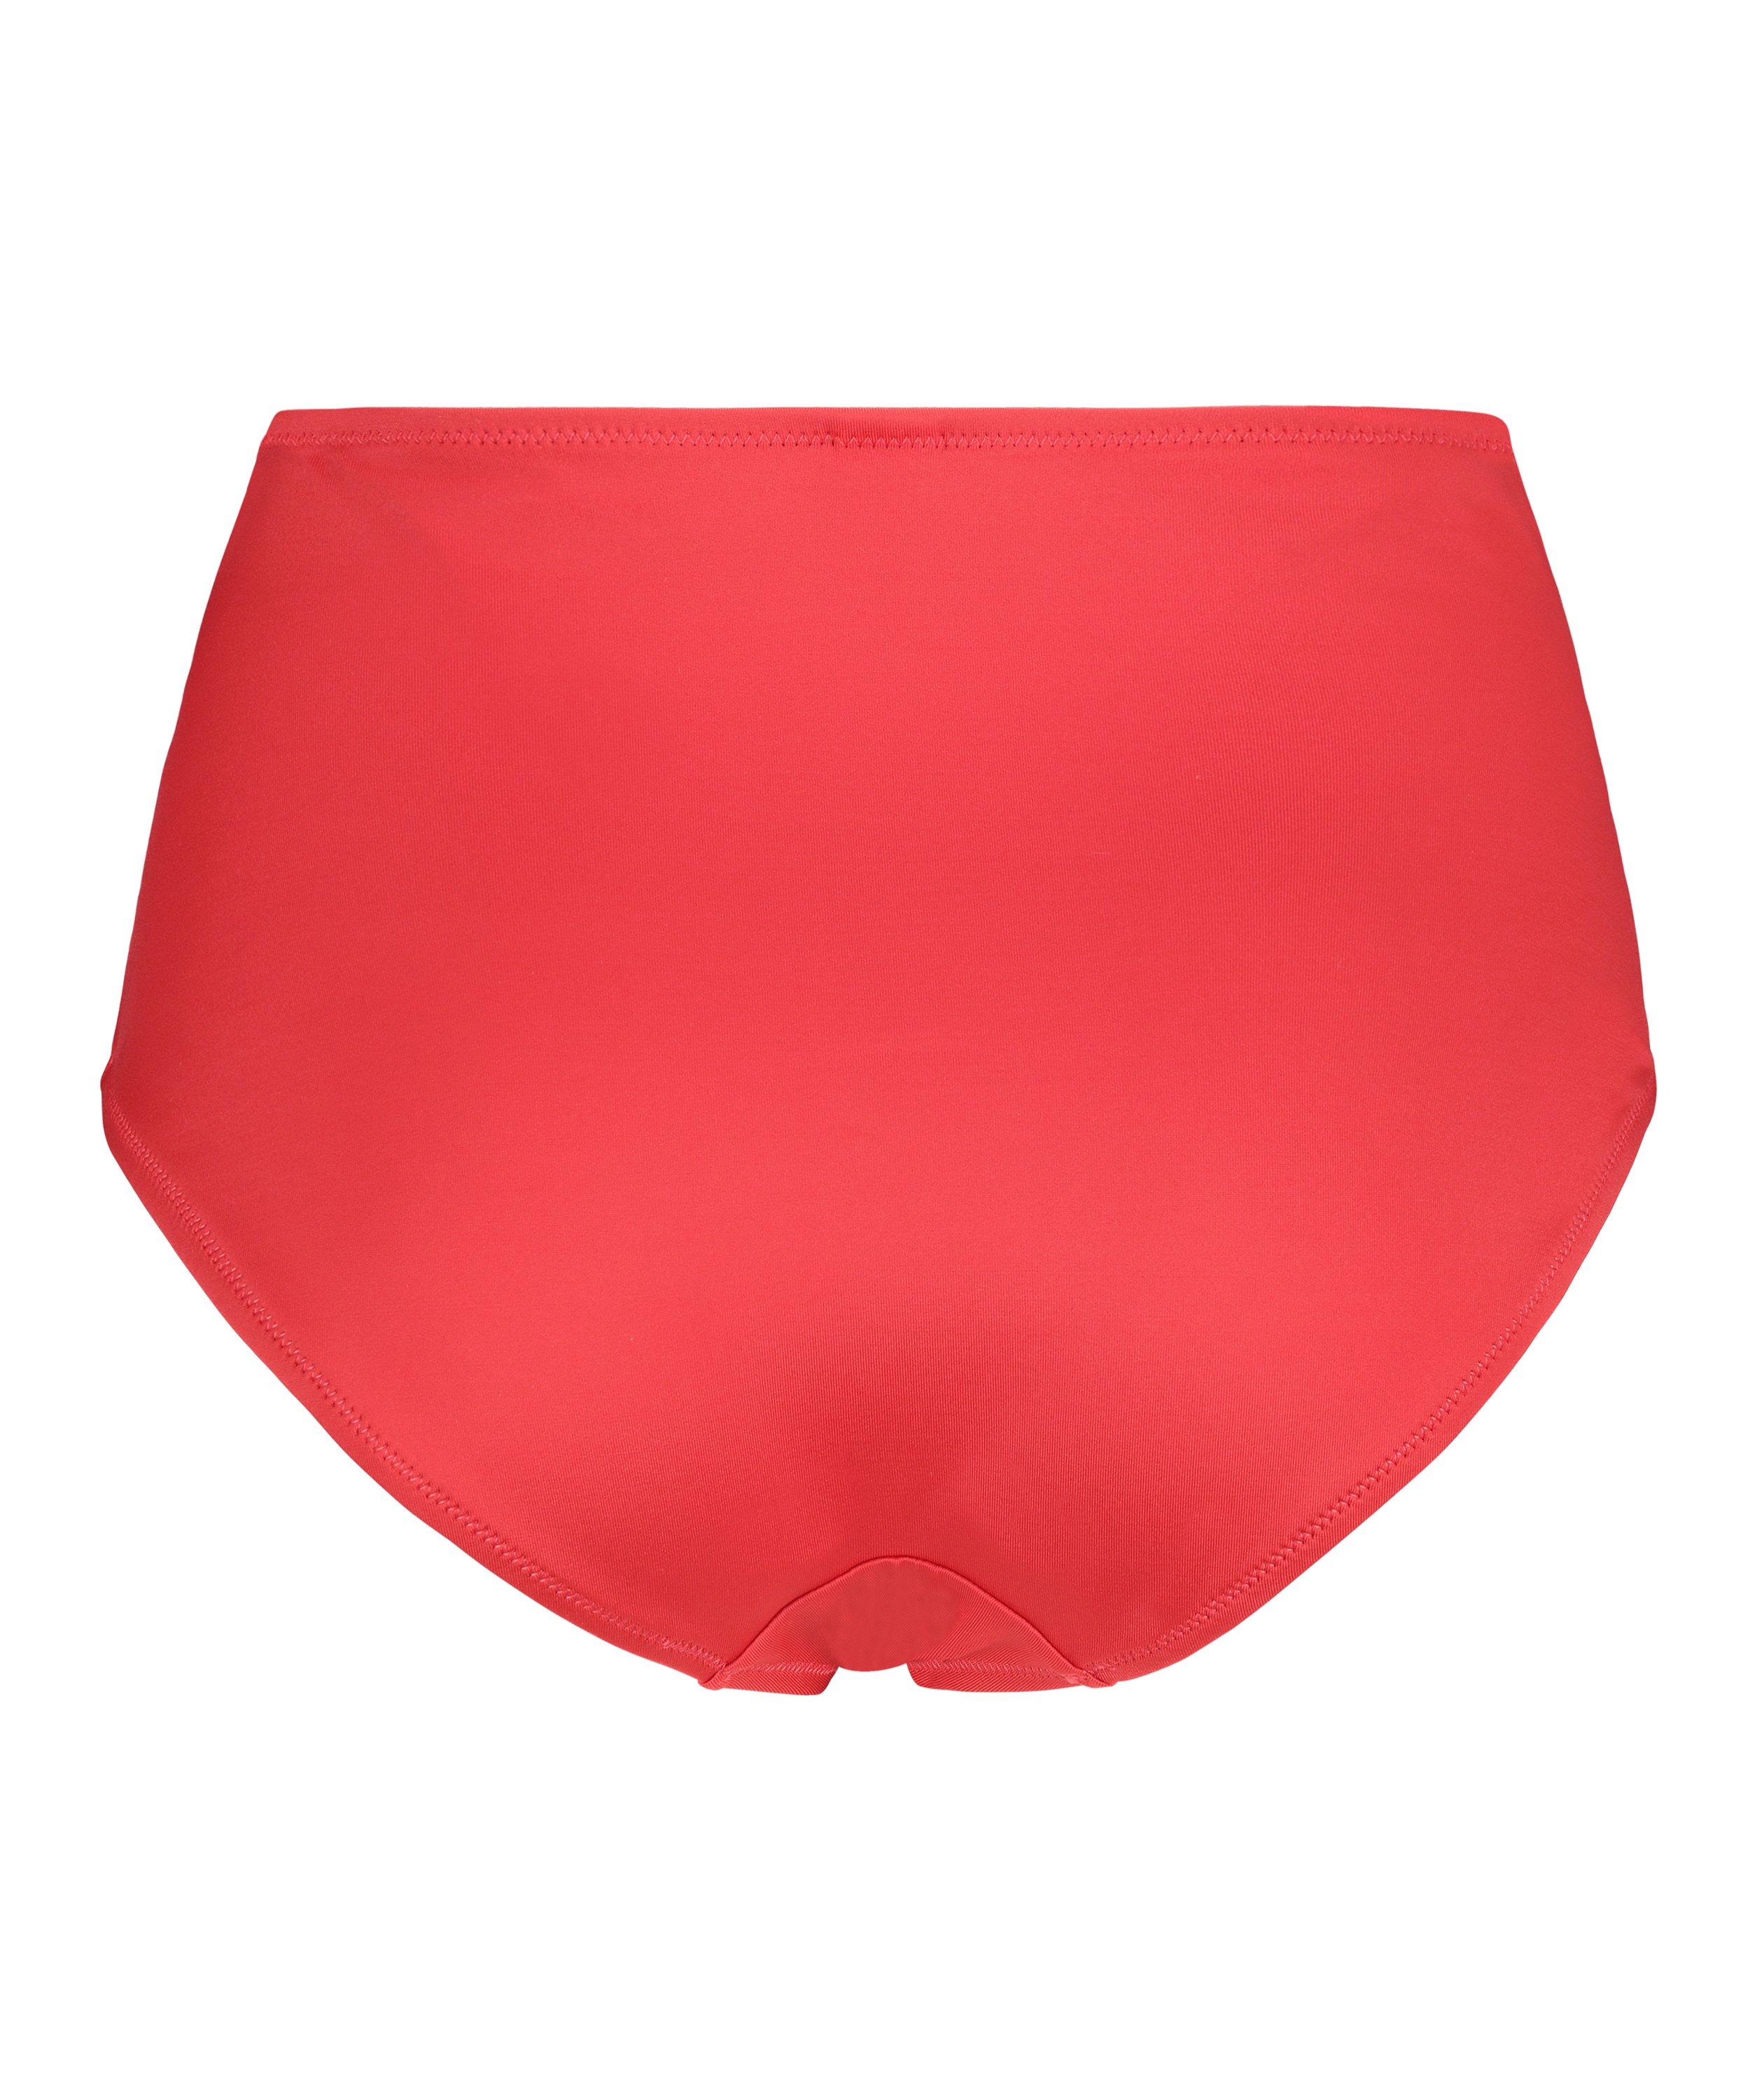 Rio Deluxe bikiniunderdel med hög midja, röd, main